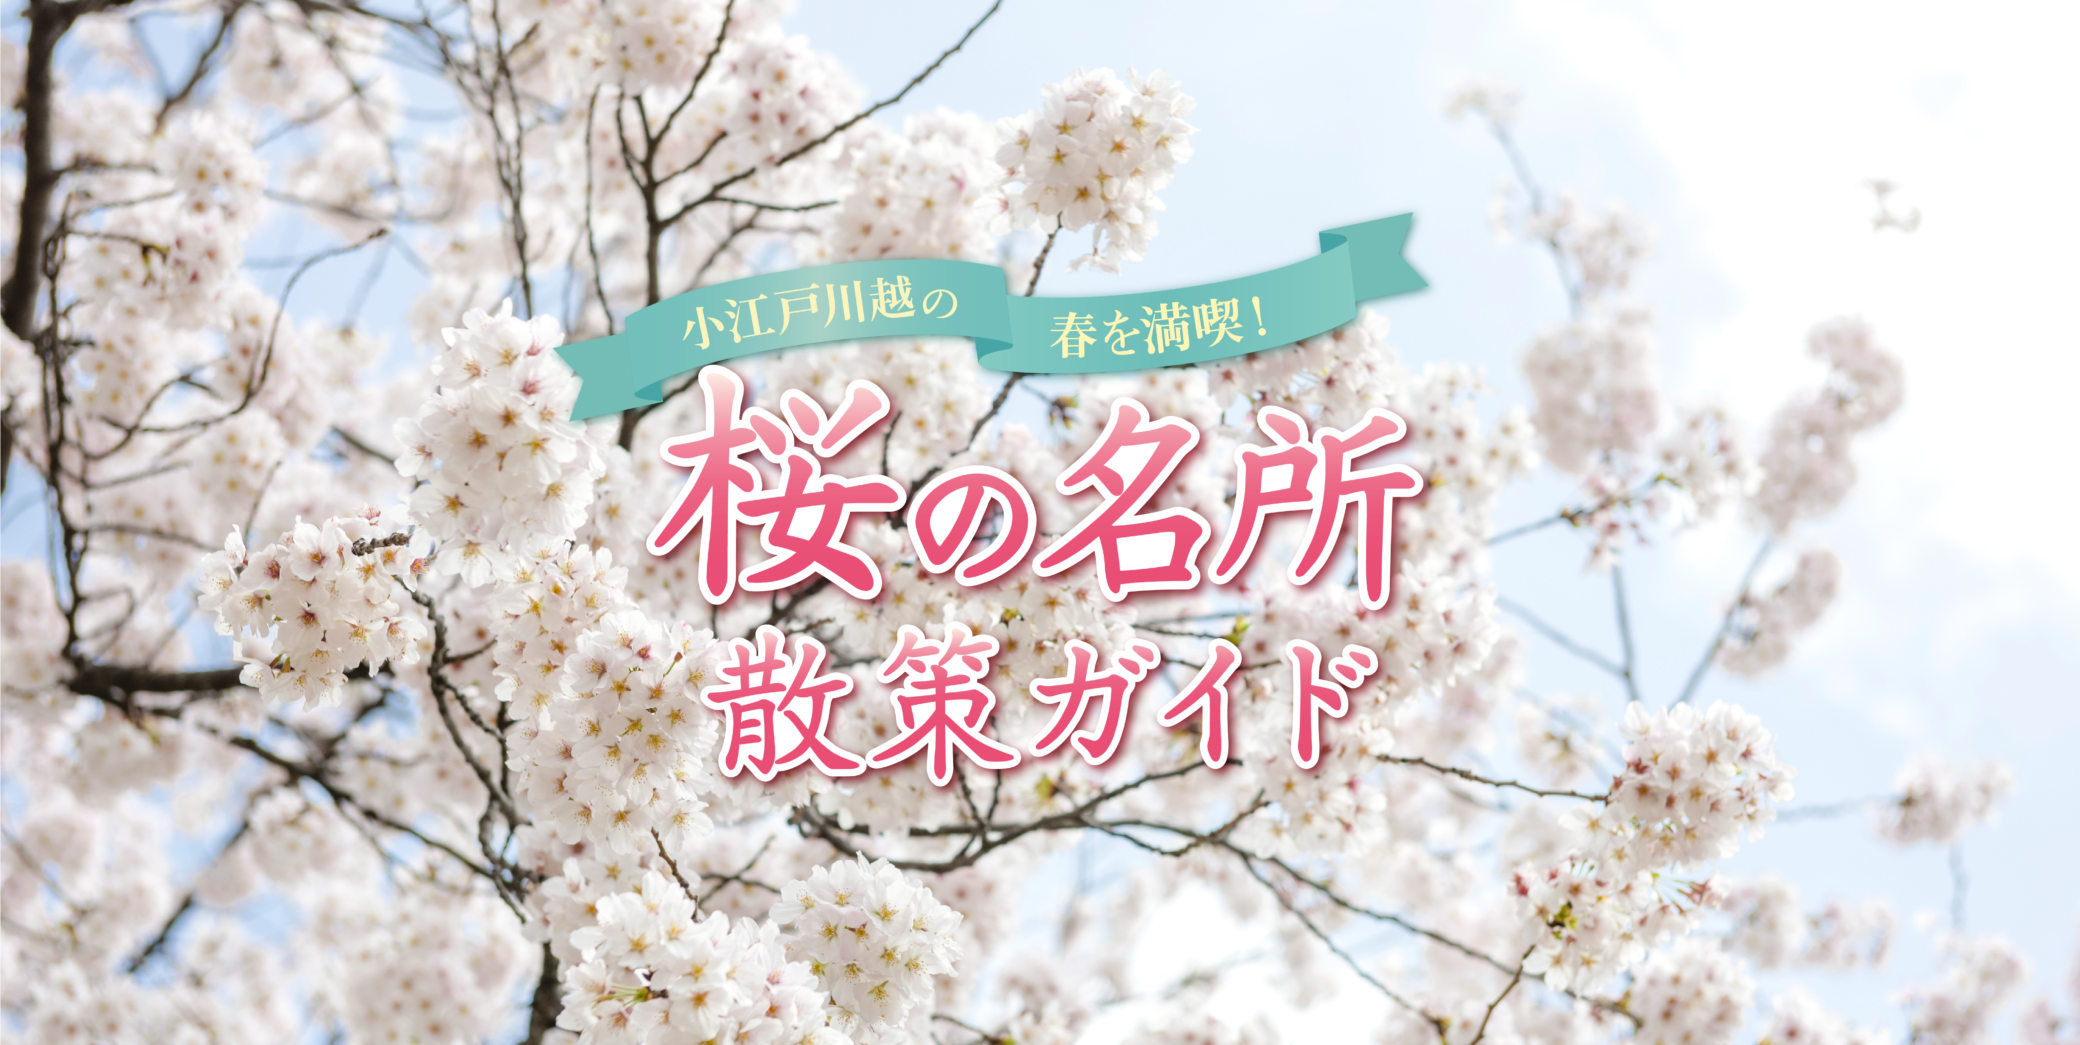 Genießen Sie den Frühling in Koedo Kawagoe!Leitfaden zur Kirschblütenbetrachtung